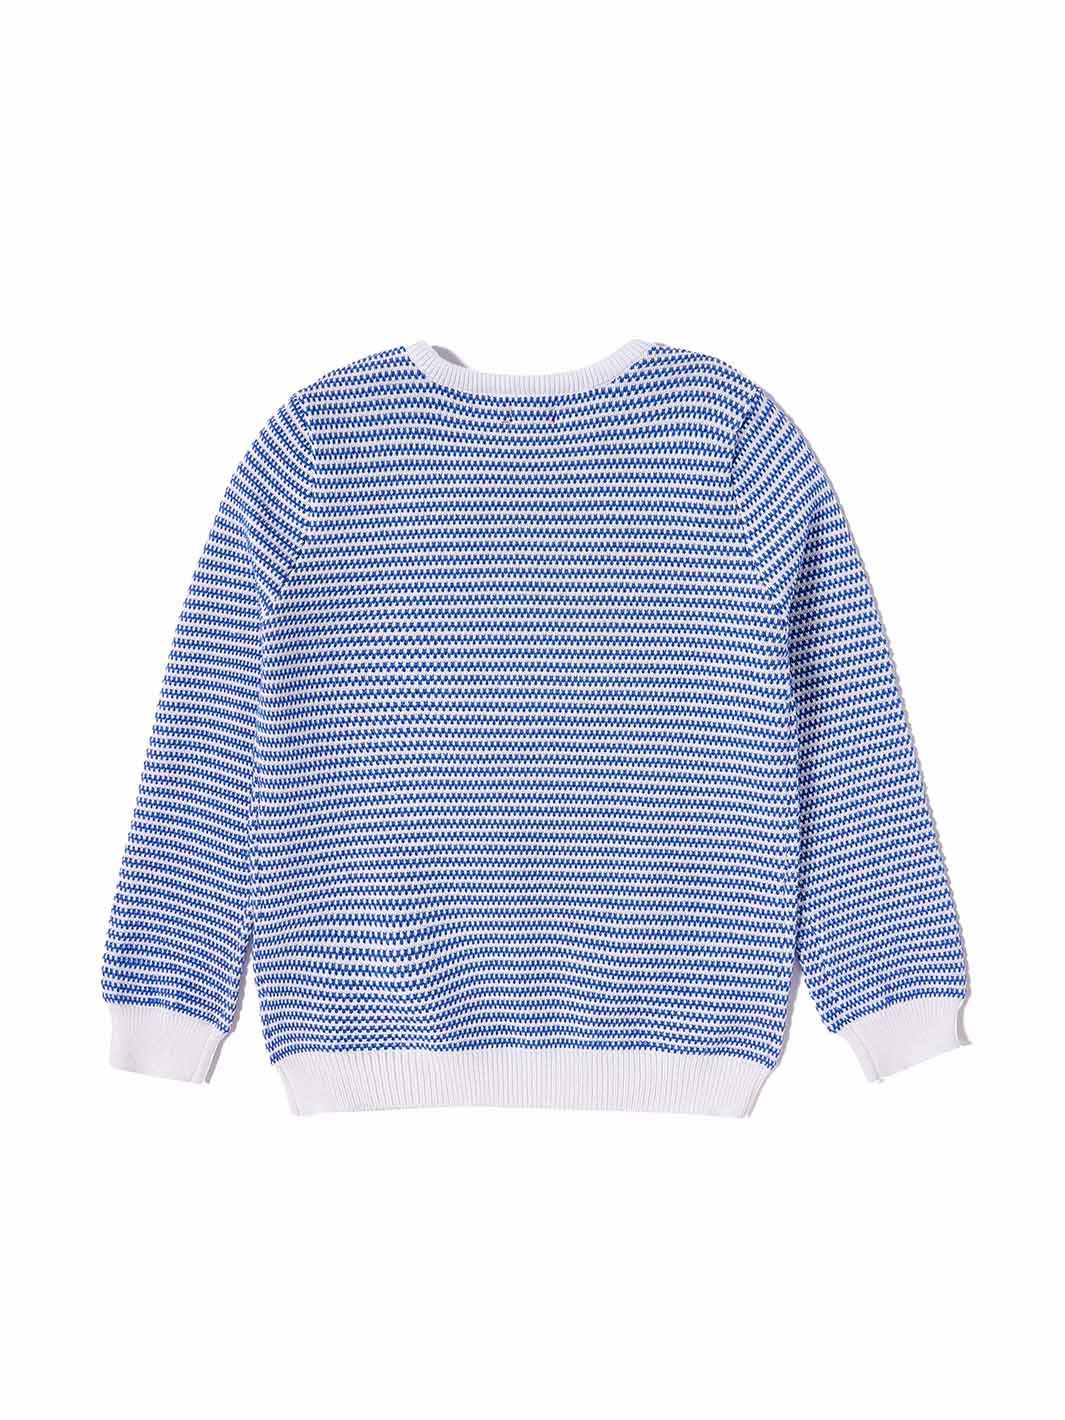 Uneven Stripe Sweater